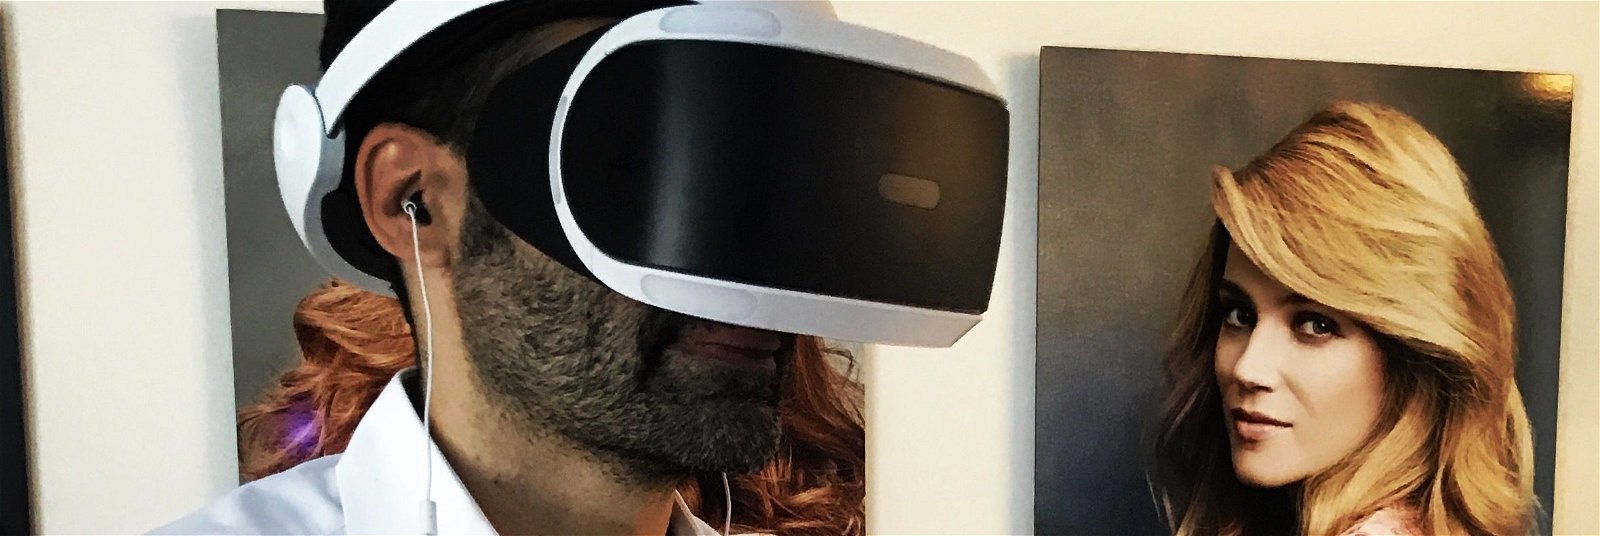 Daniel Langer in VR headset